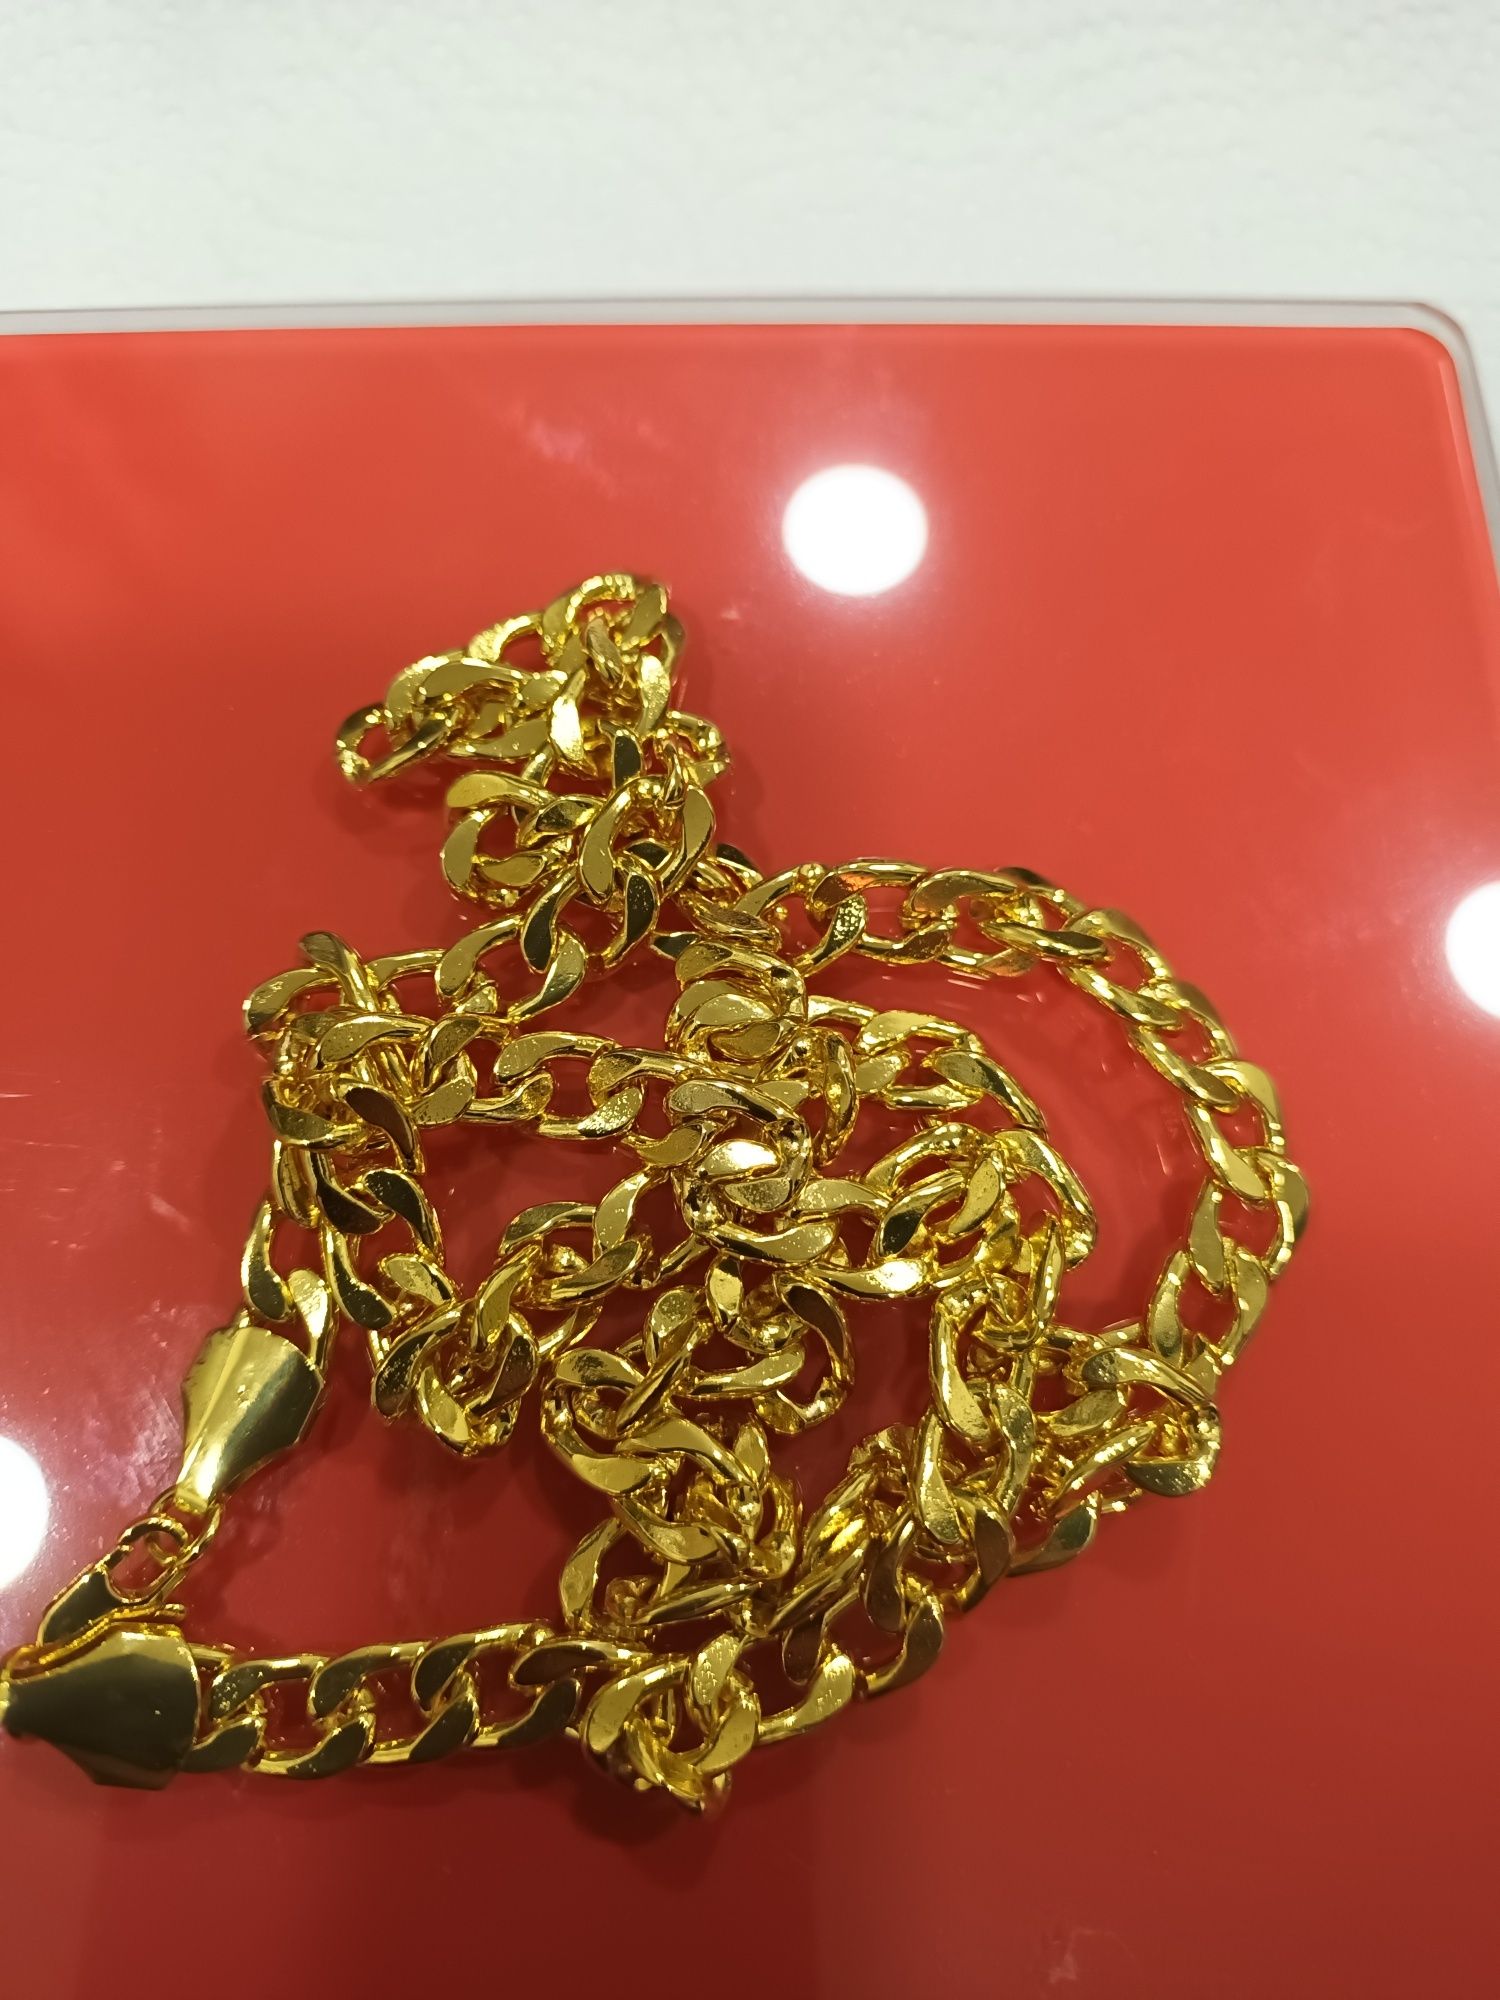 60€ Novo cordão 60 cm e pulseira 20 cm banhado a ouro 24k